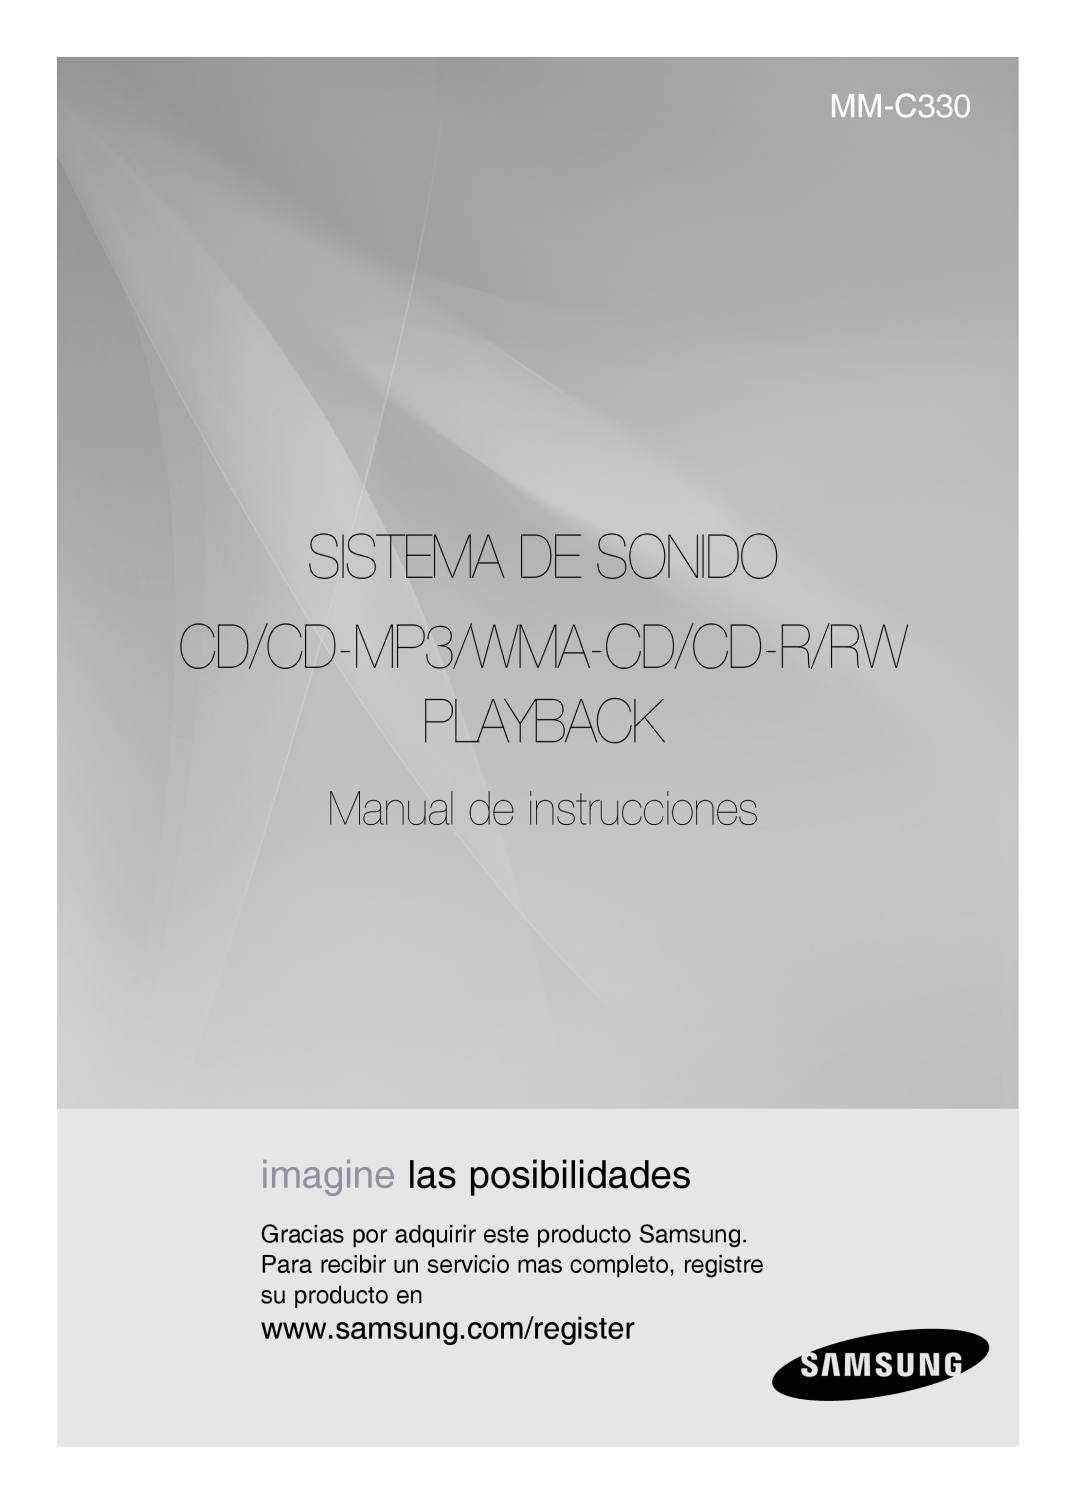 Samsung MM-C330/XEF manual Sistema De Sonido, Playback, CD/CD-MP3/WMA-CD/CD-R/RW, Manual de instrucciones 